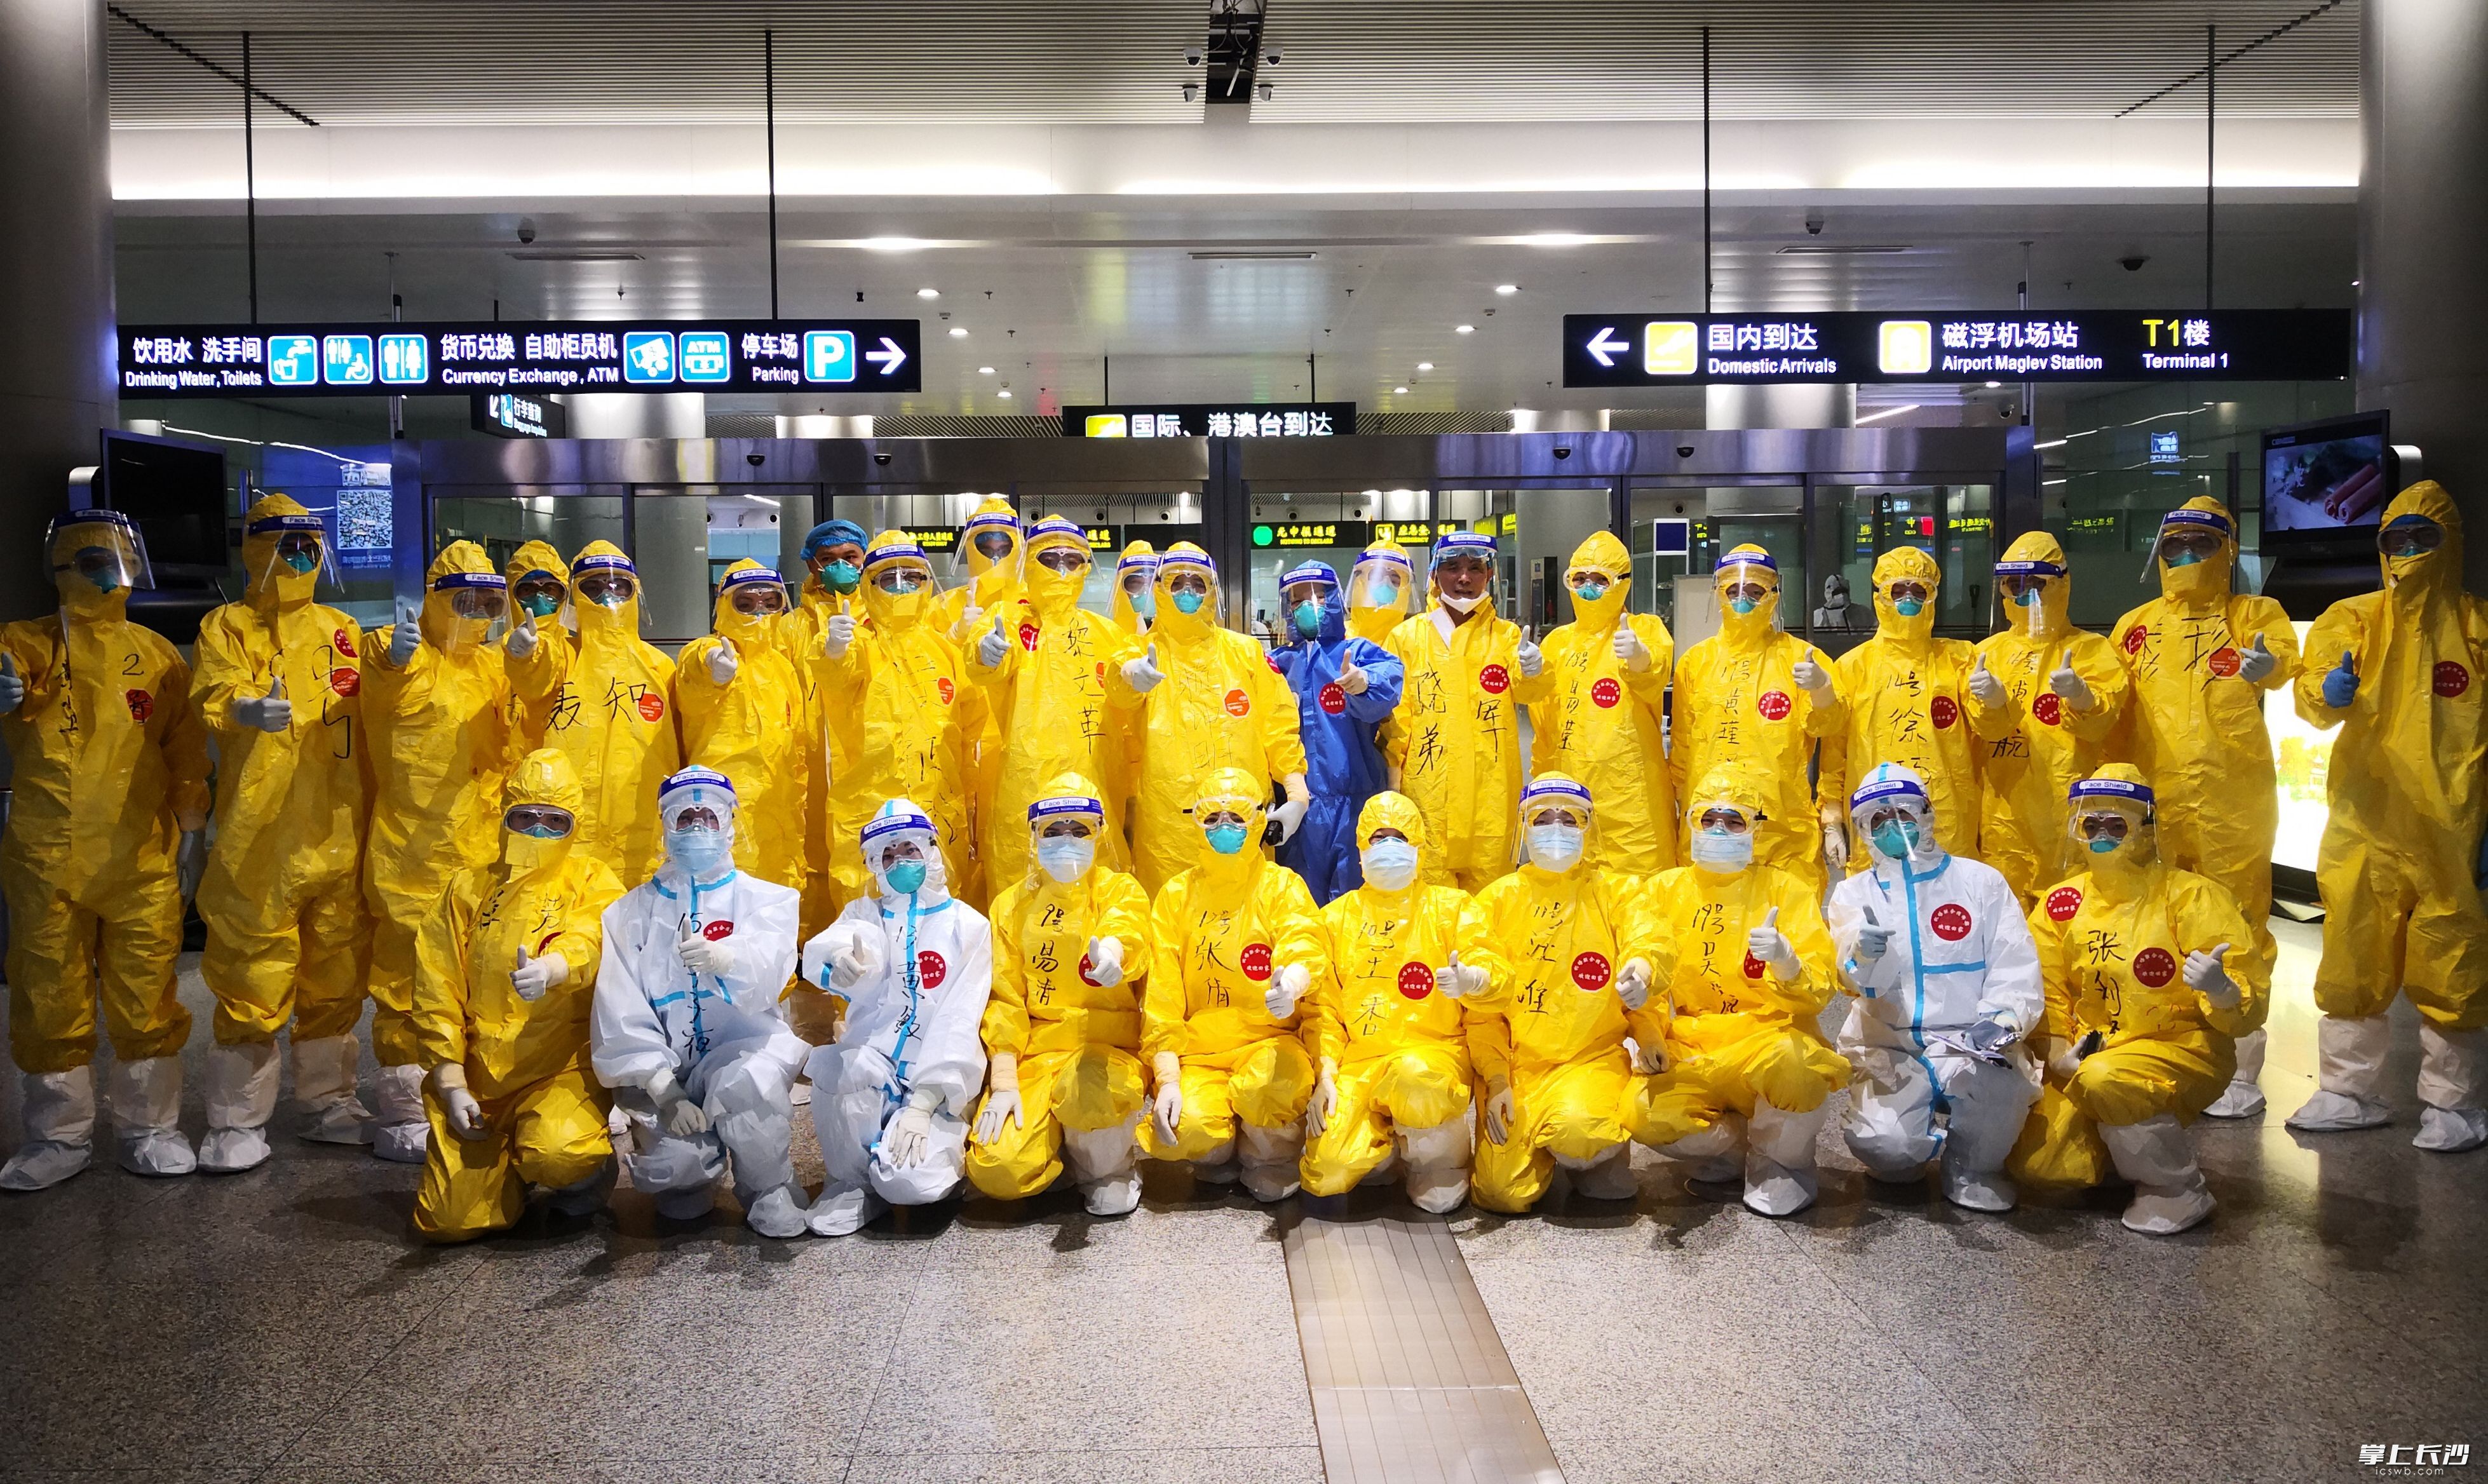 长沙黄花国际机场疫情防控联合指挥部工作人员，每天穿着厚厚的防护服坚守在抗疫前沿。 长沙县供图